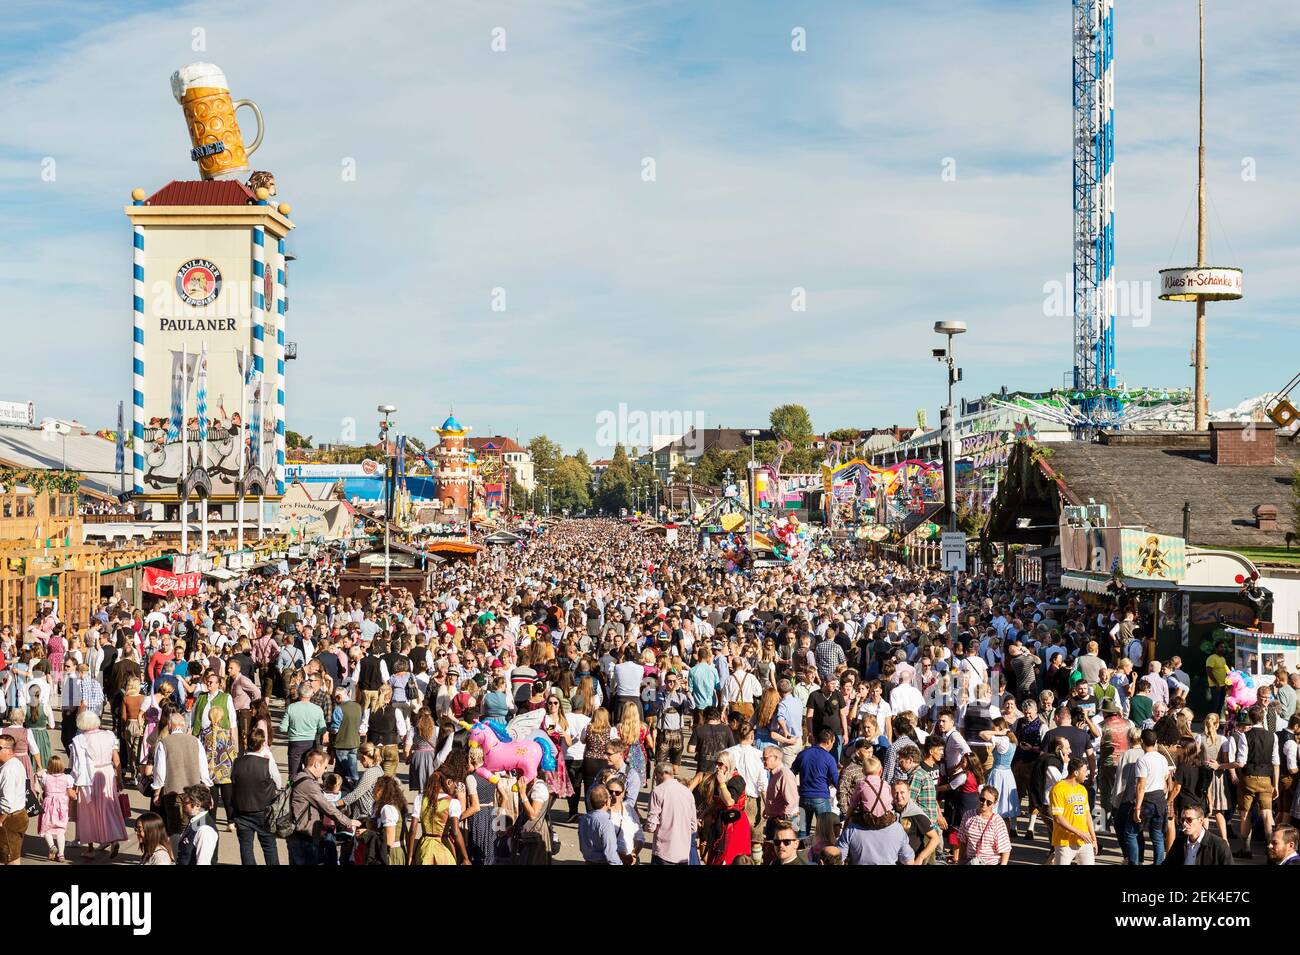 Bavière-Munich-Allemagne, 29 septembre 2019 : le plus grand festival folklorique du monde, l'Oktoberfest de Munich, une scène typique de l'Oktober de Munich Banque D'Images